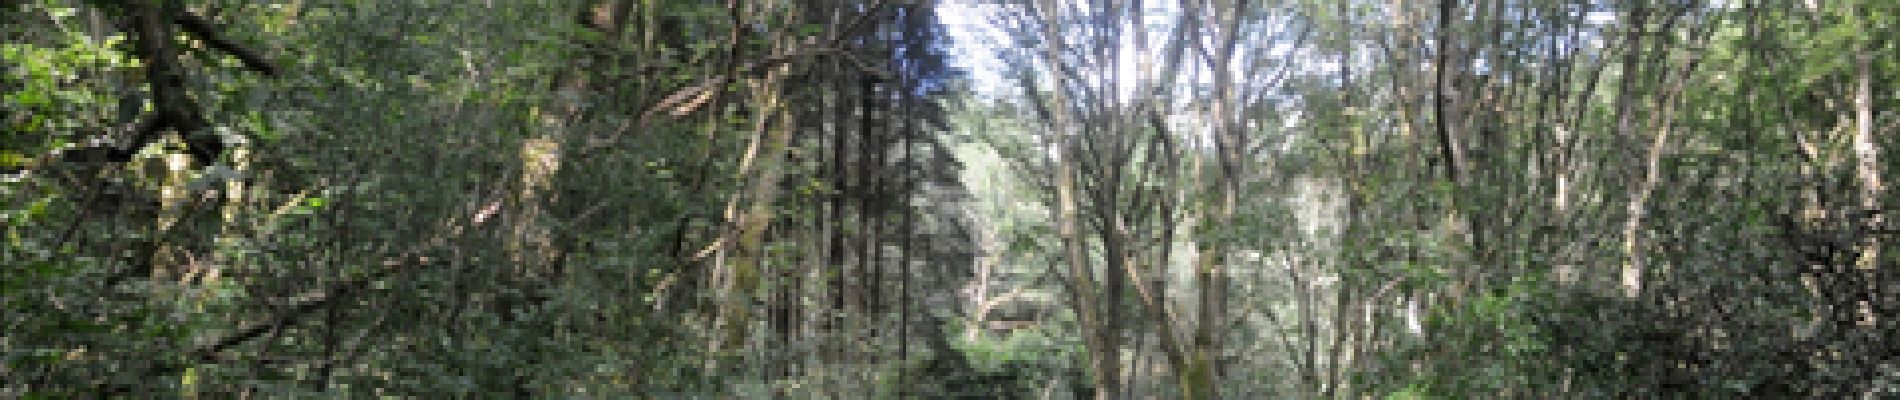 POI Vresse-sur-Semois - 5 - Aux pieds de arbres - Photo